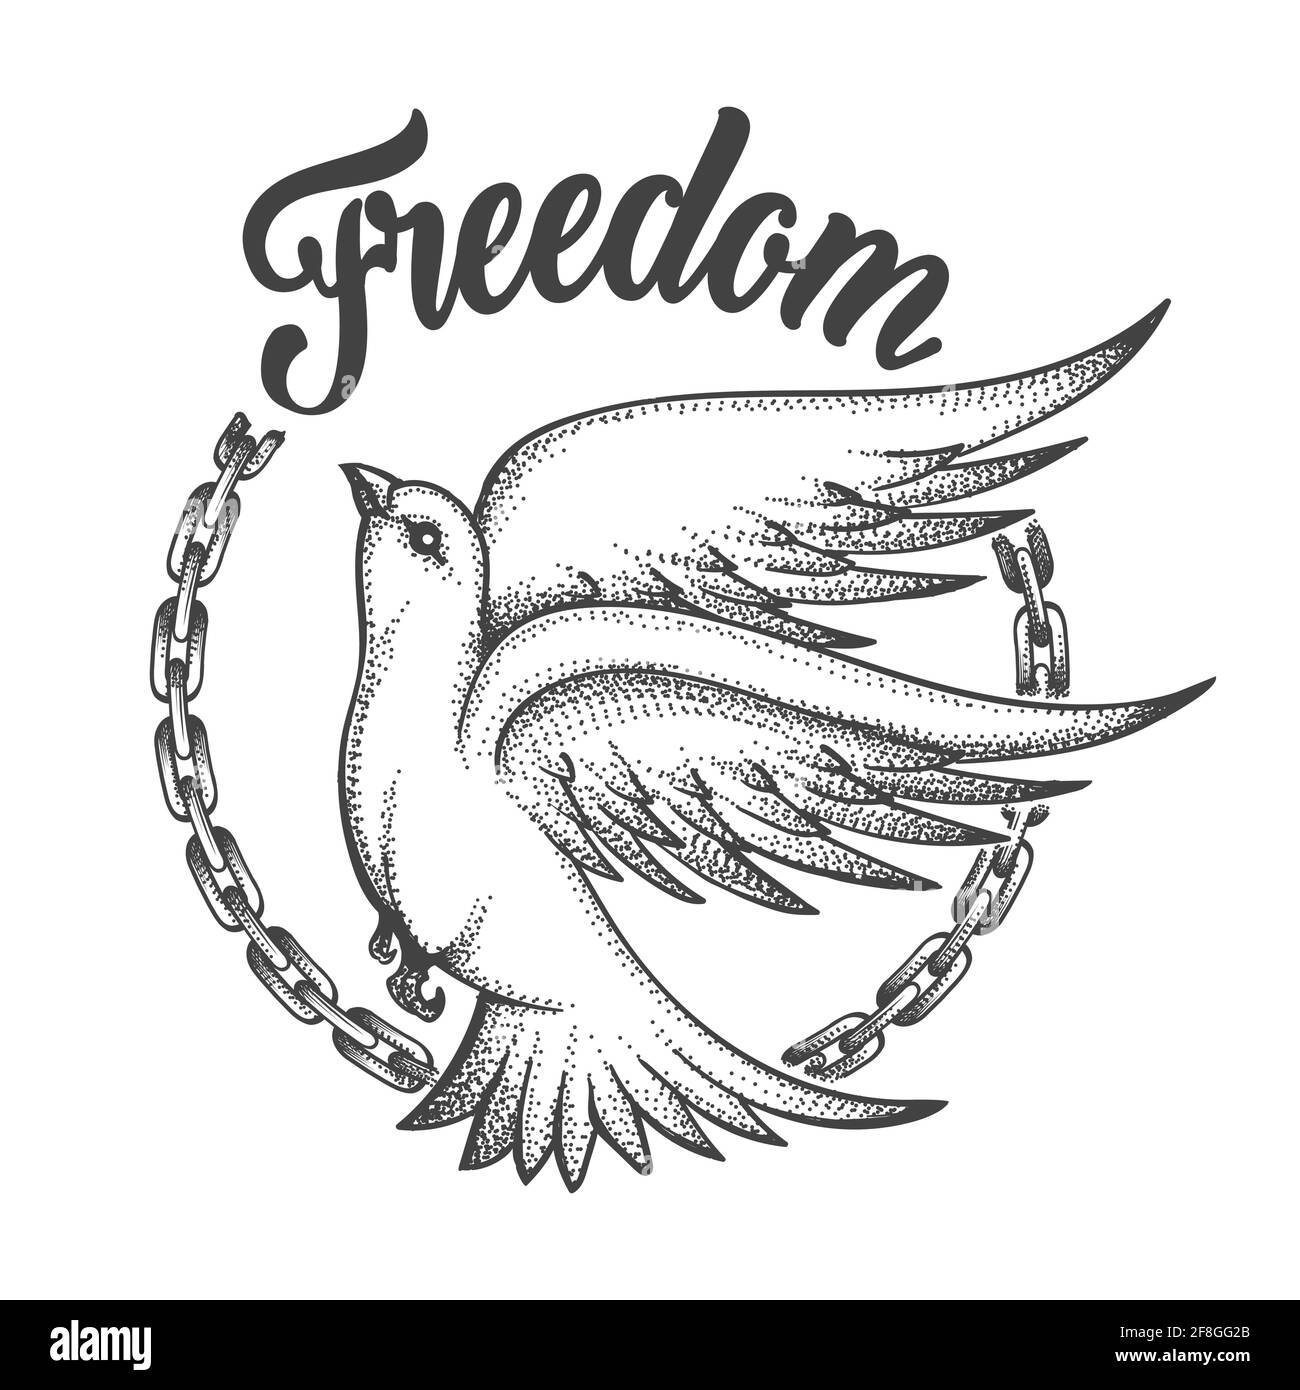 La liberté est une colombe avec une chaîne rompue et l'intitulé Freedom. Freedom concept Tattoo sur fond blanc. Illustration vectorielle Illustration de Vecteur